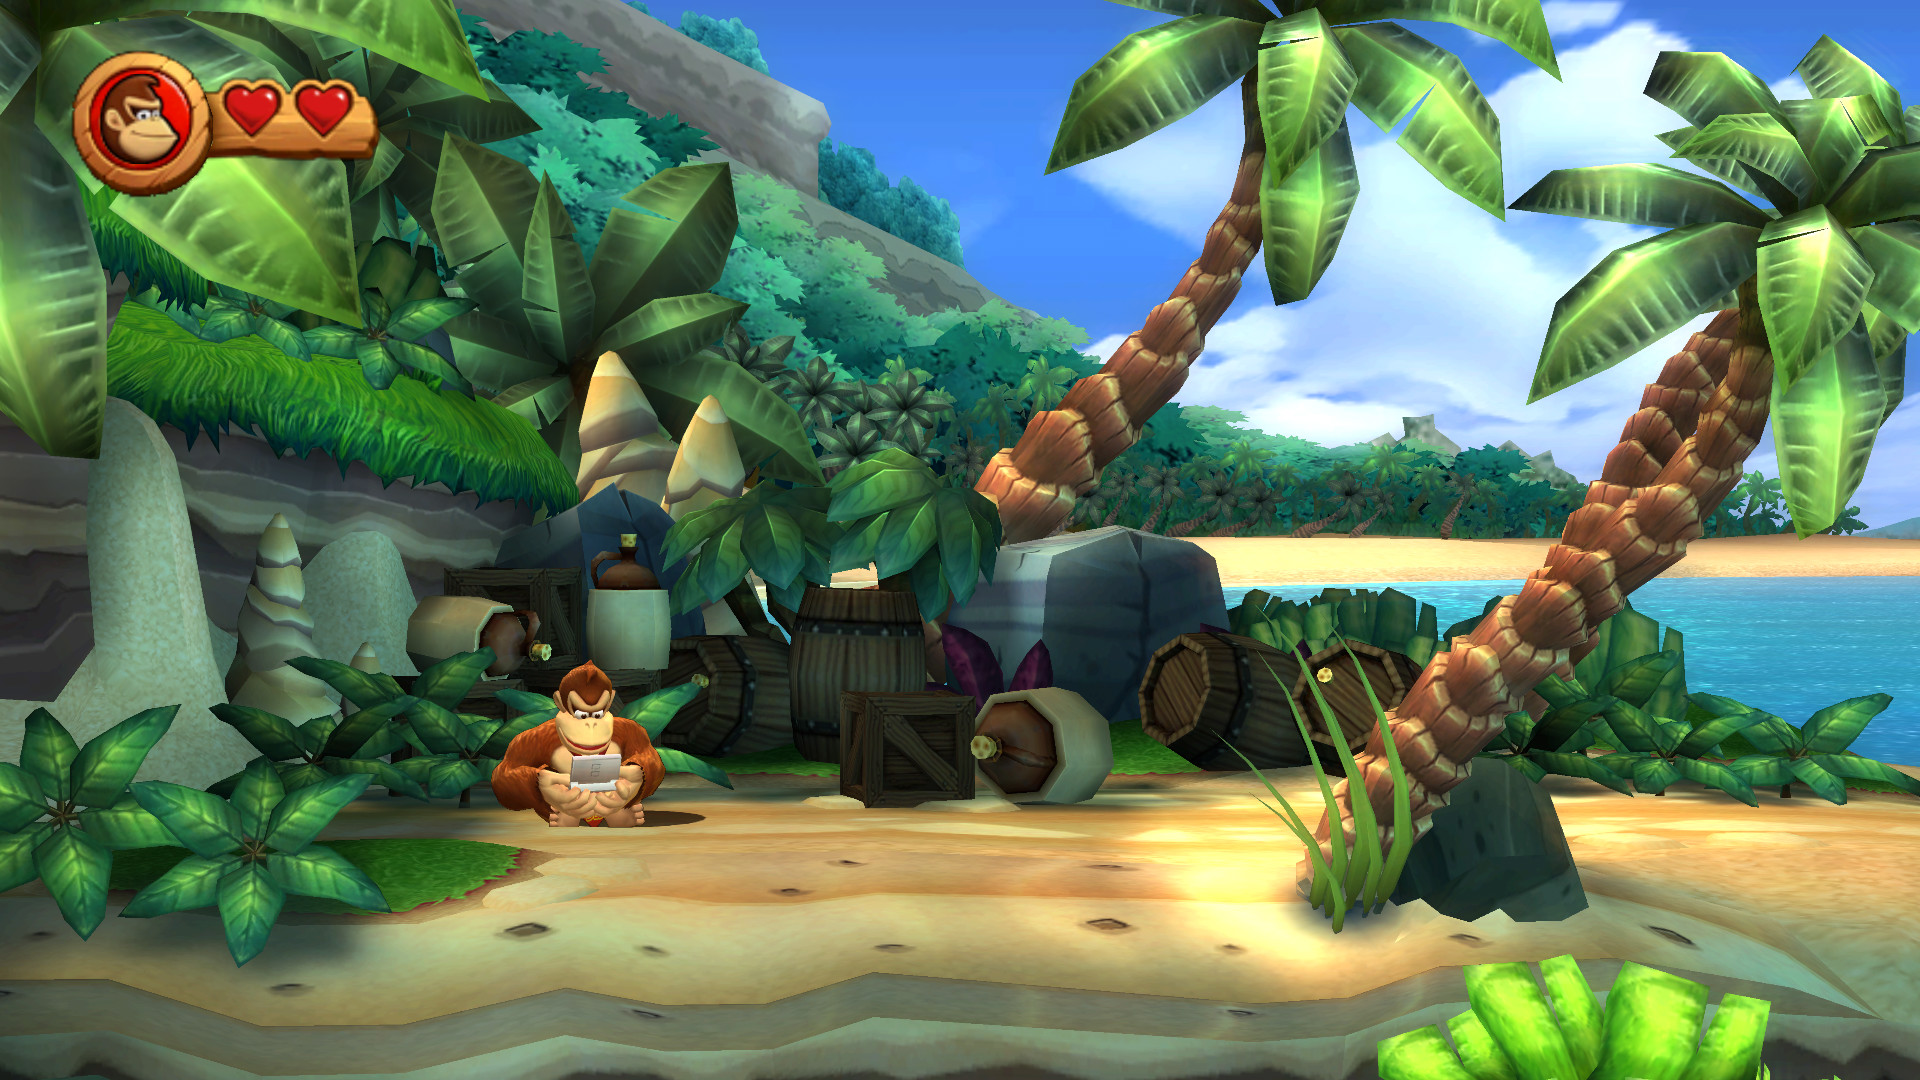 El actual consola fórmula Nintendo Download: Donkey Kong Country Returns Wii U – Destructoid